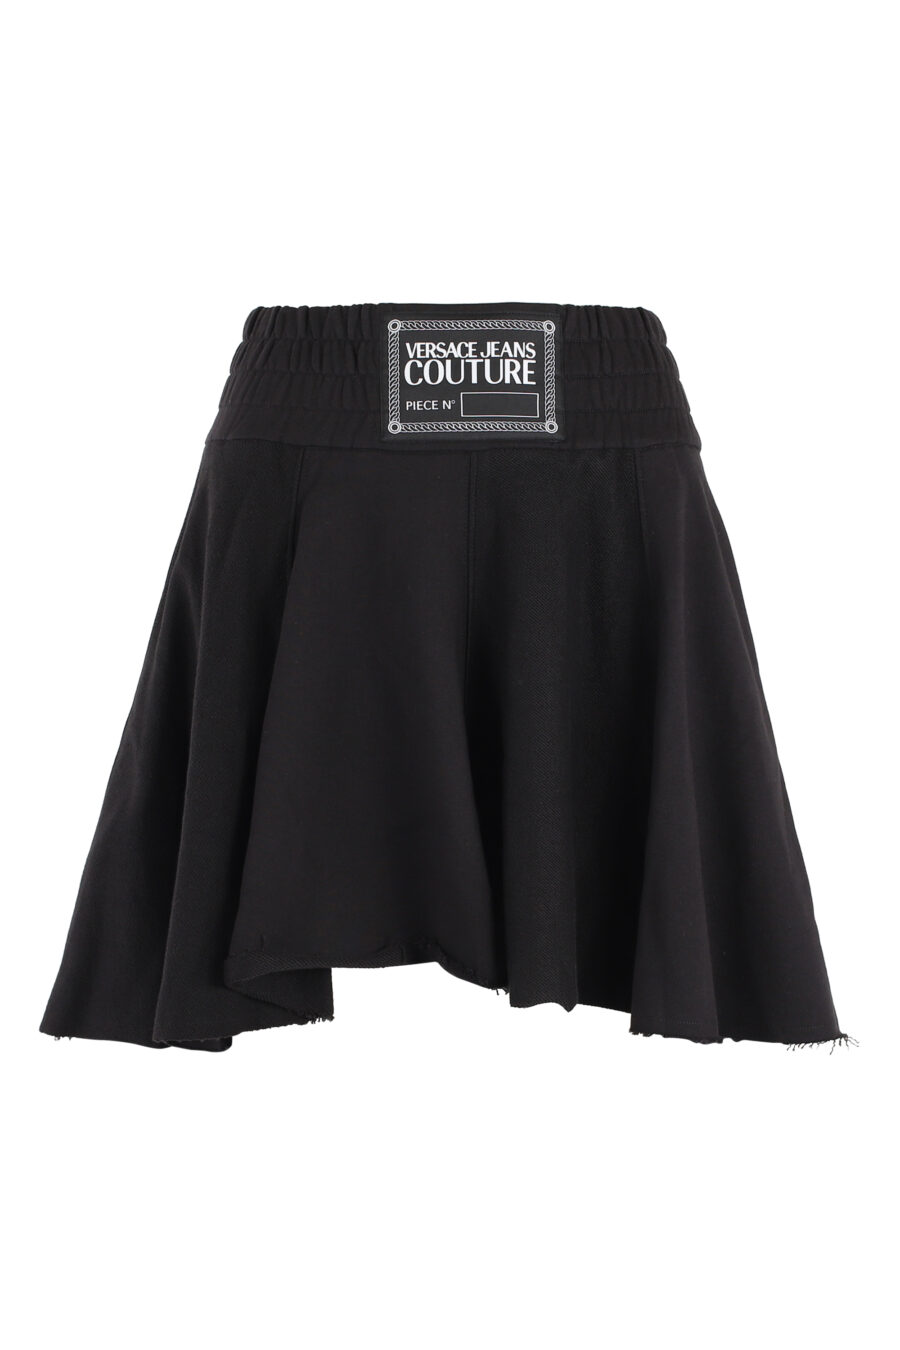 Falda corta negra con logo en cintura - IMG 5093